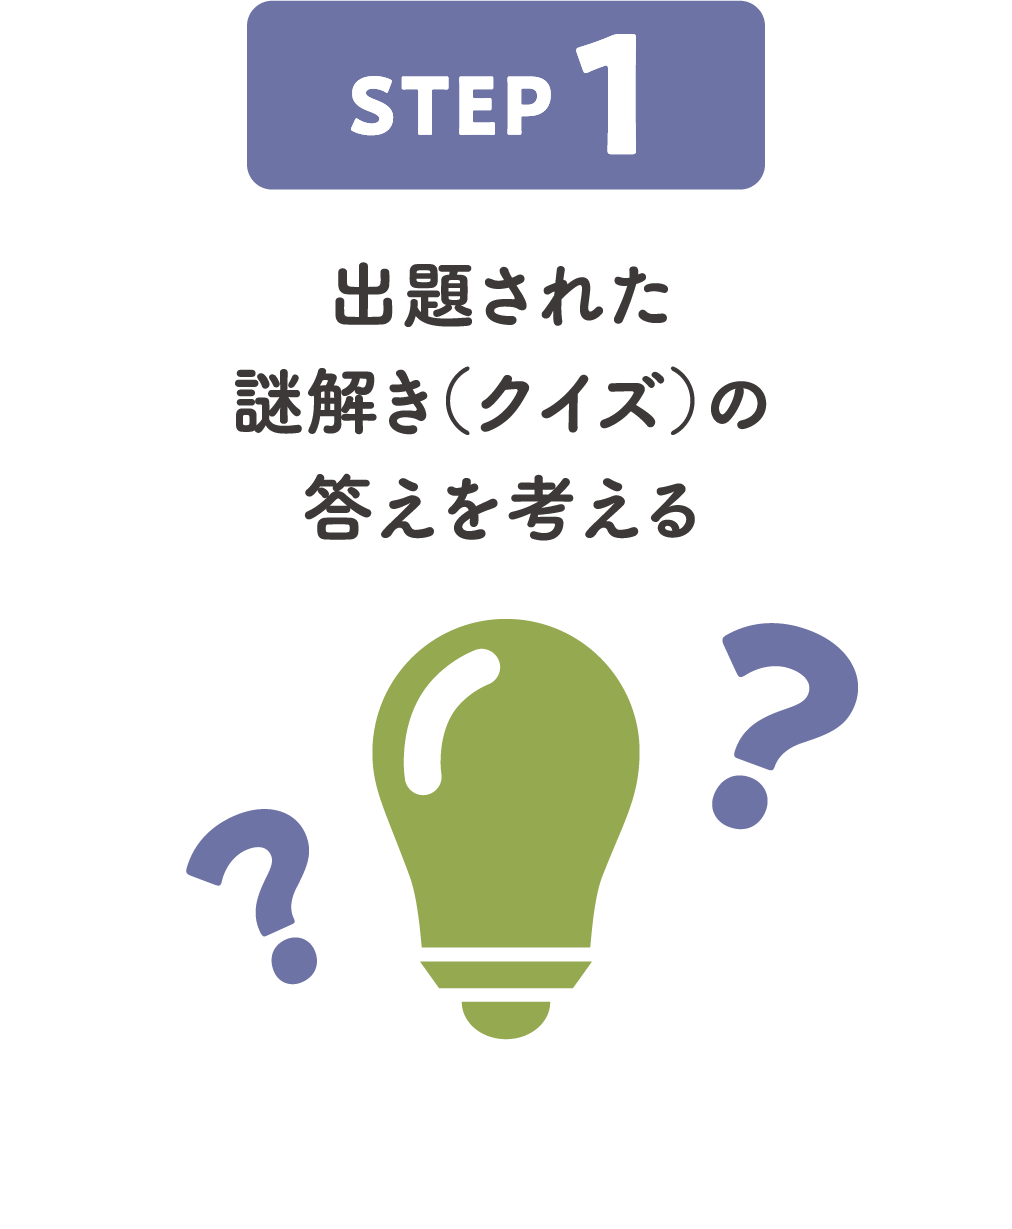 STEP1:出題された謎解き（クイズ）の答えを考える